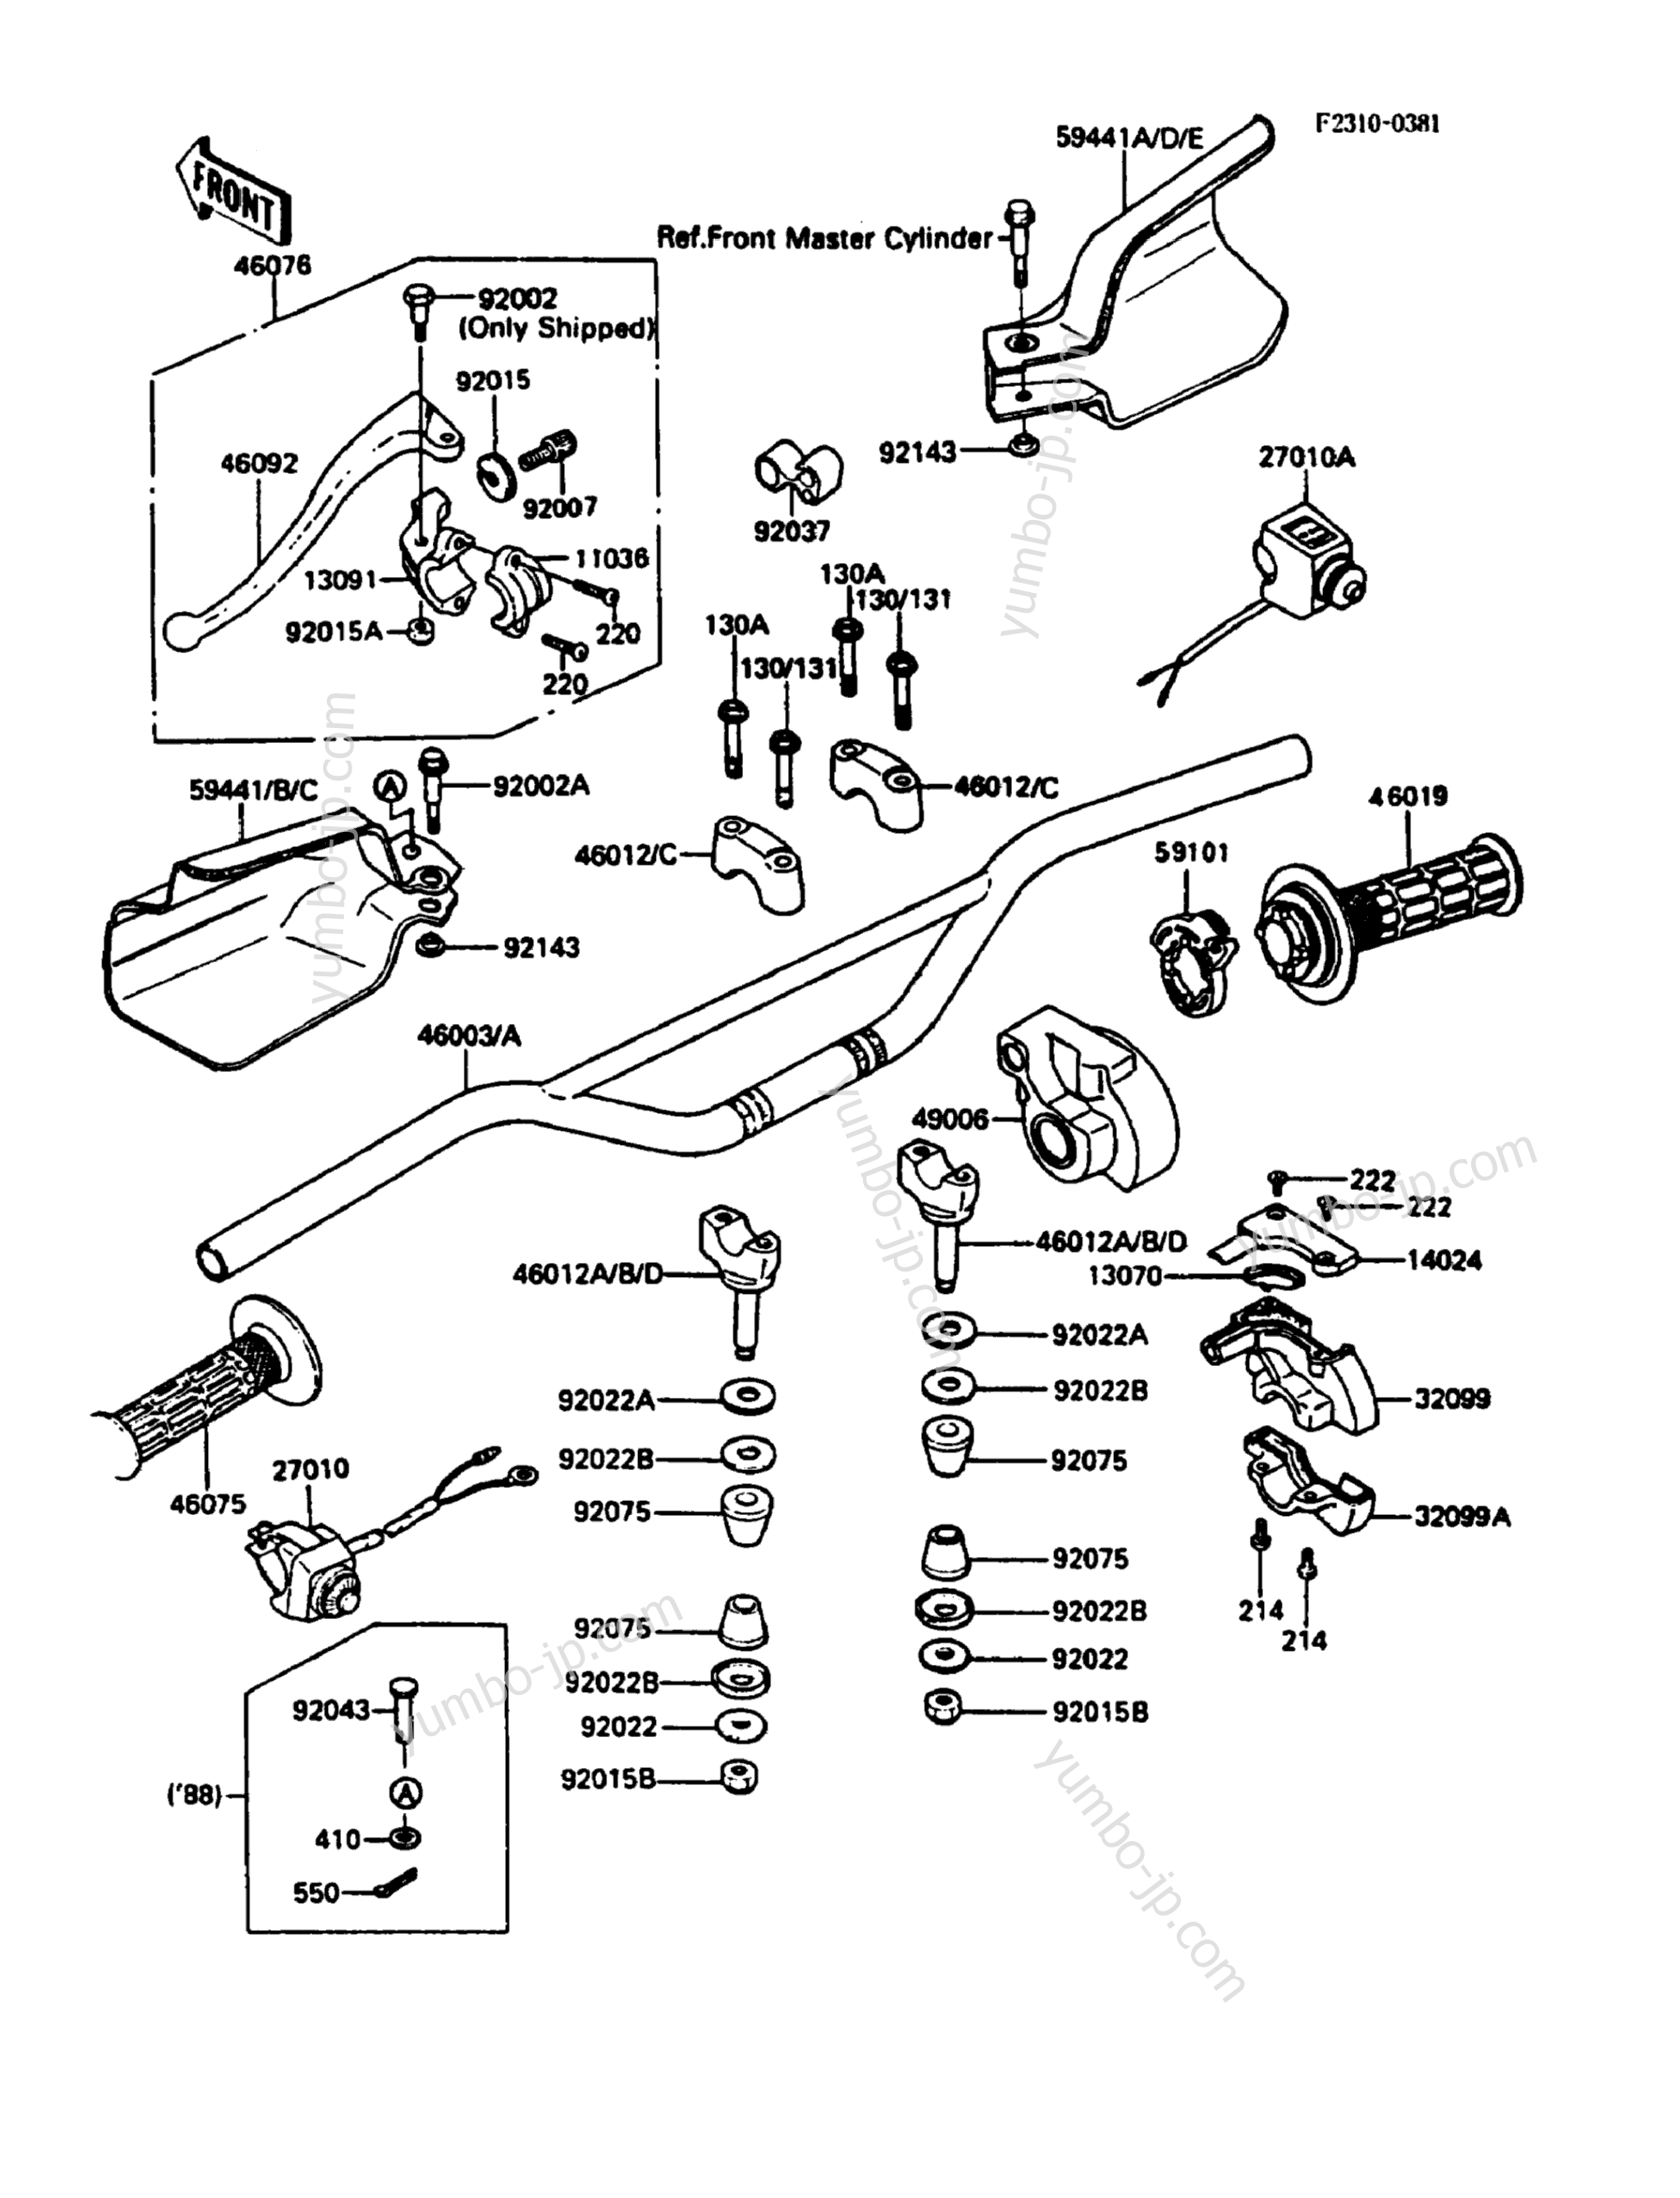 Румпель (рукоятка управления) для мотоциклов KAWASAKI KDX200 (KDX200-C2) 1987 г.